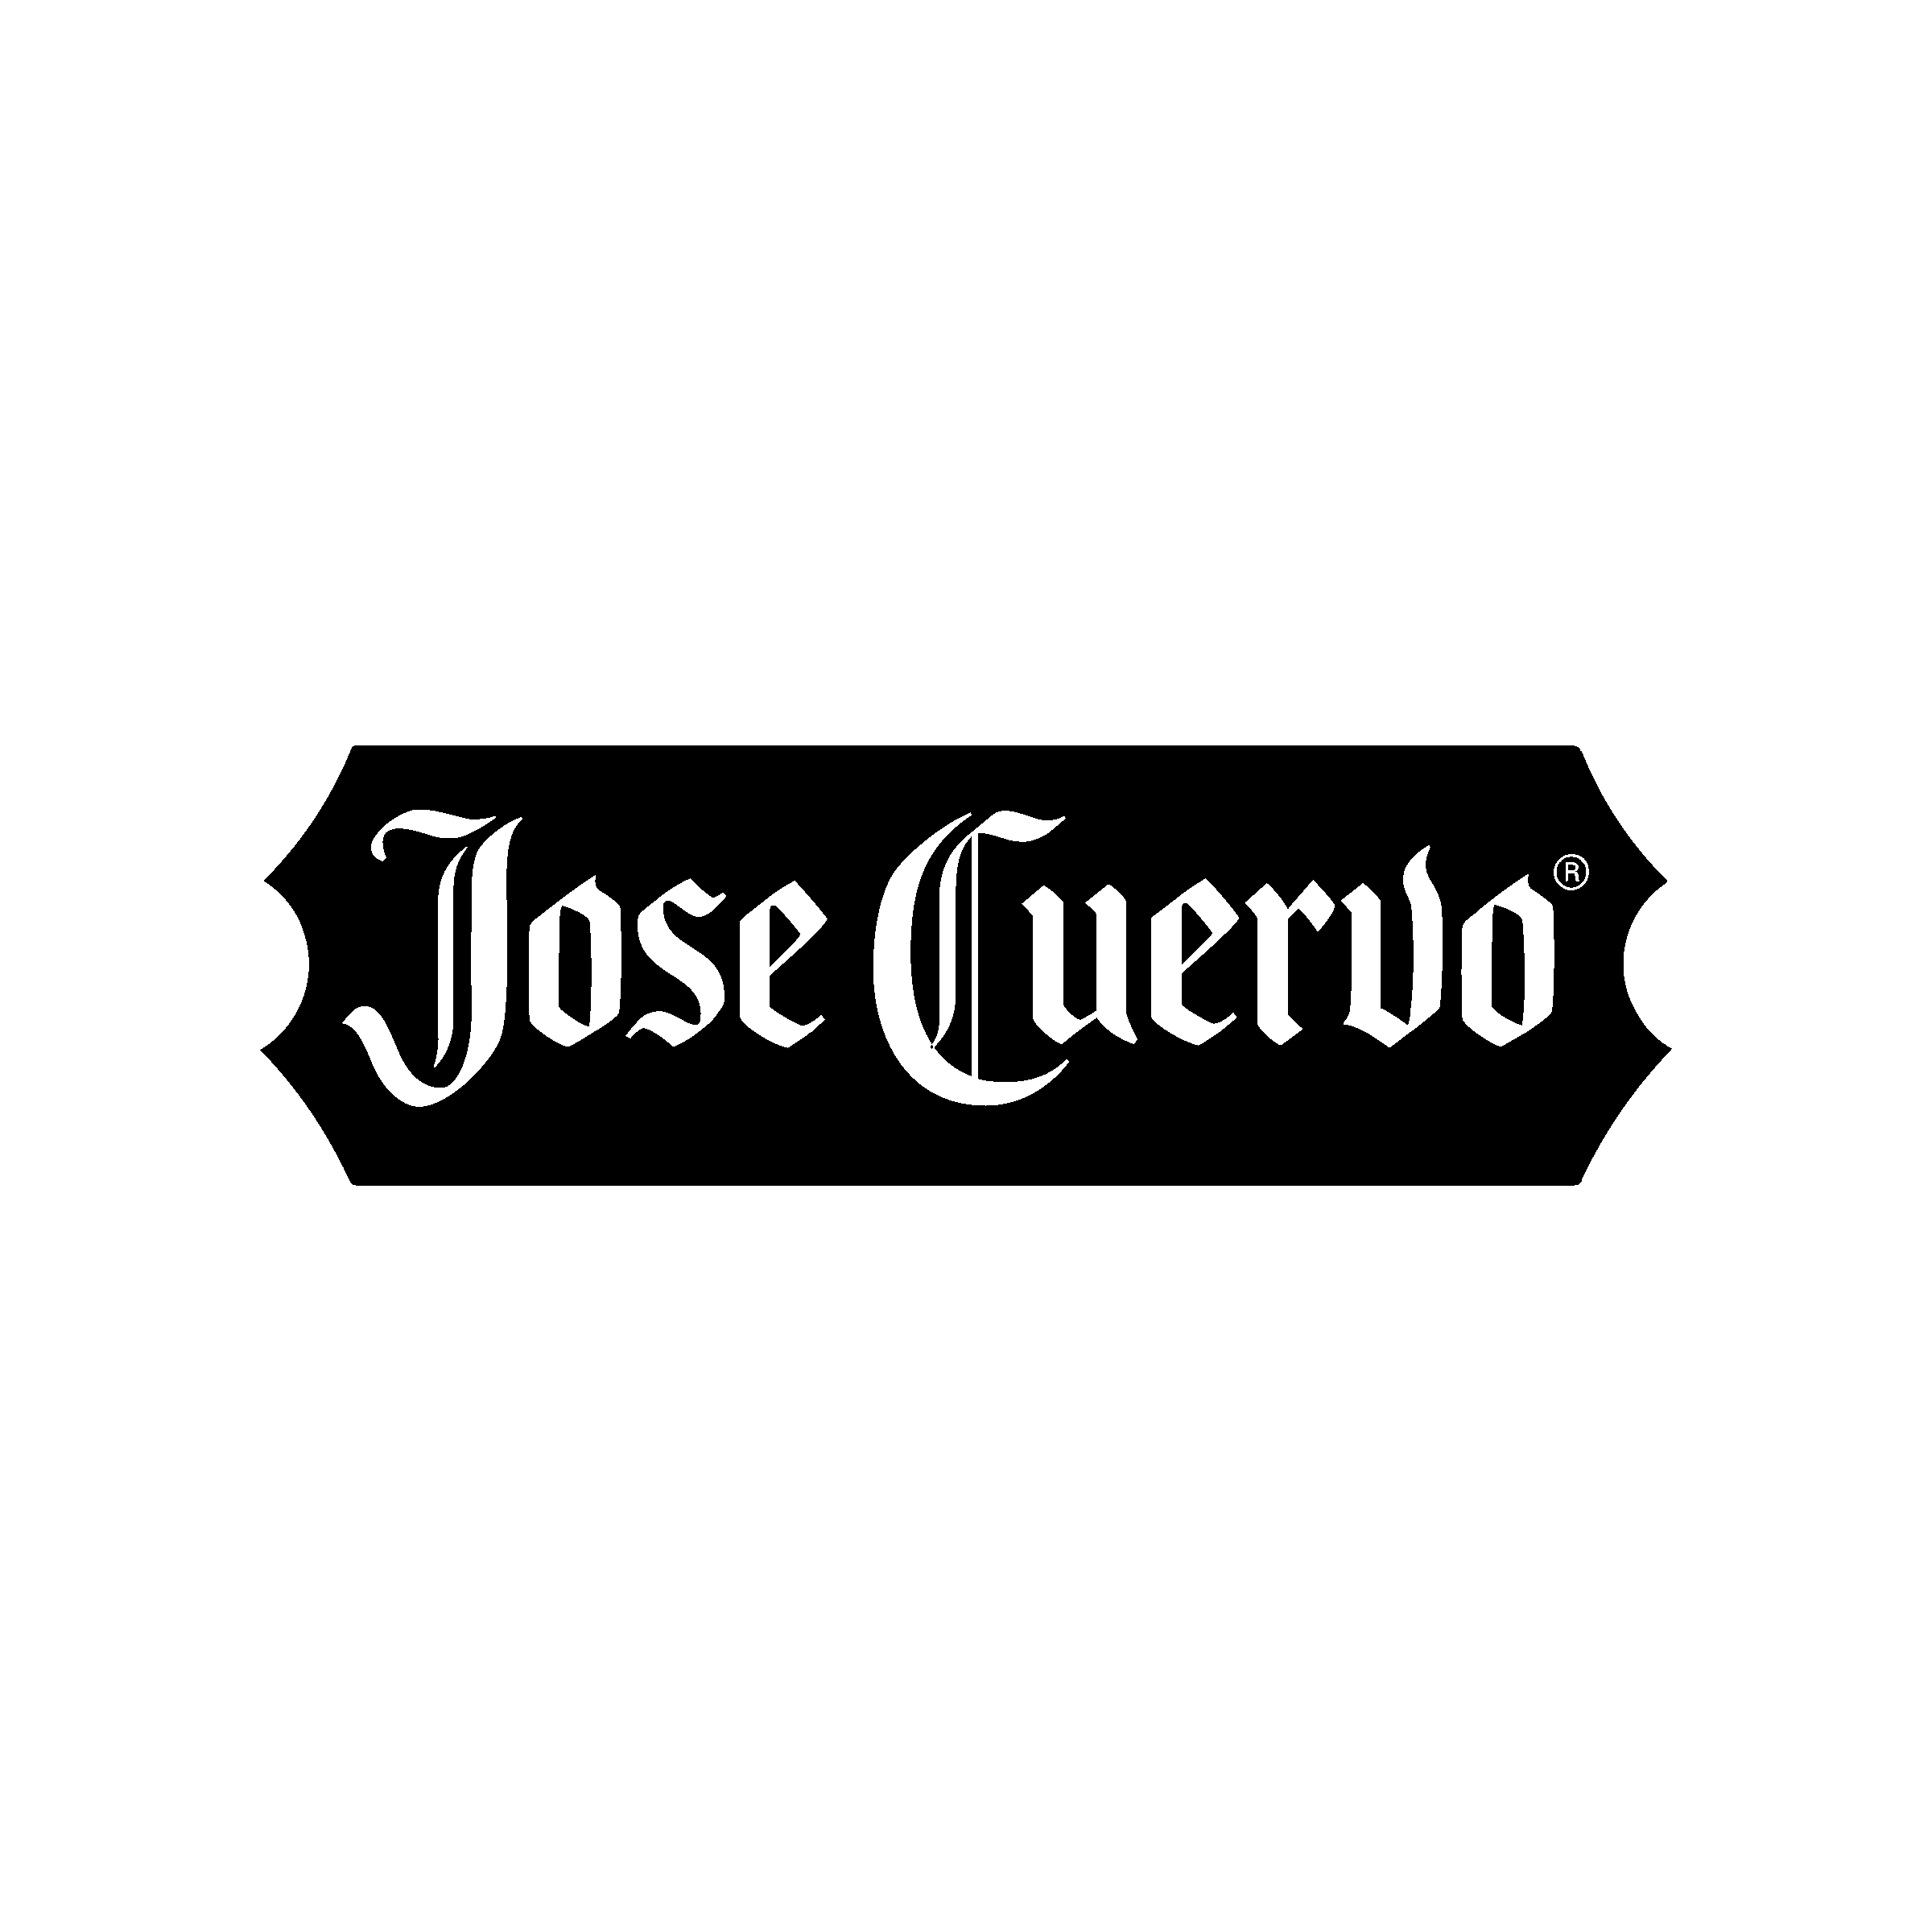 Jose Cuervo Logo PNG Transparent & SVG Vector.